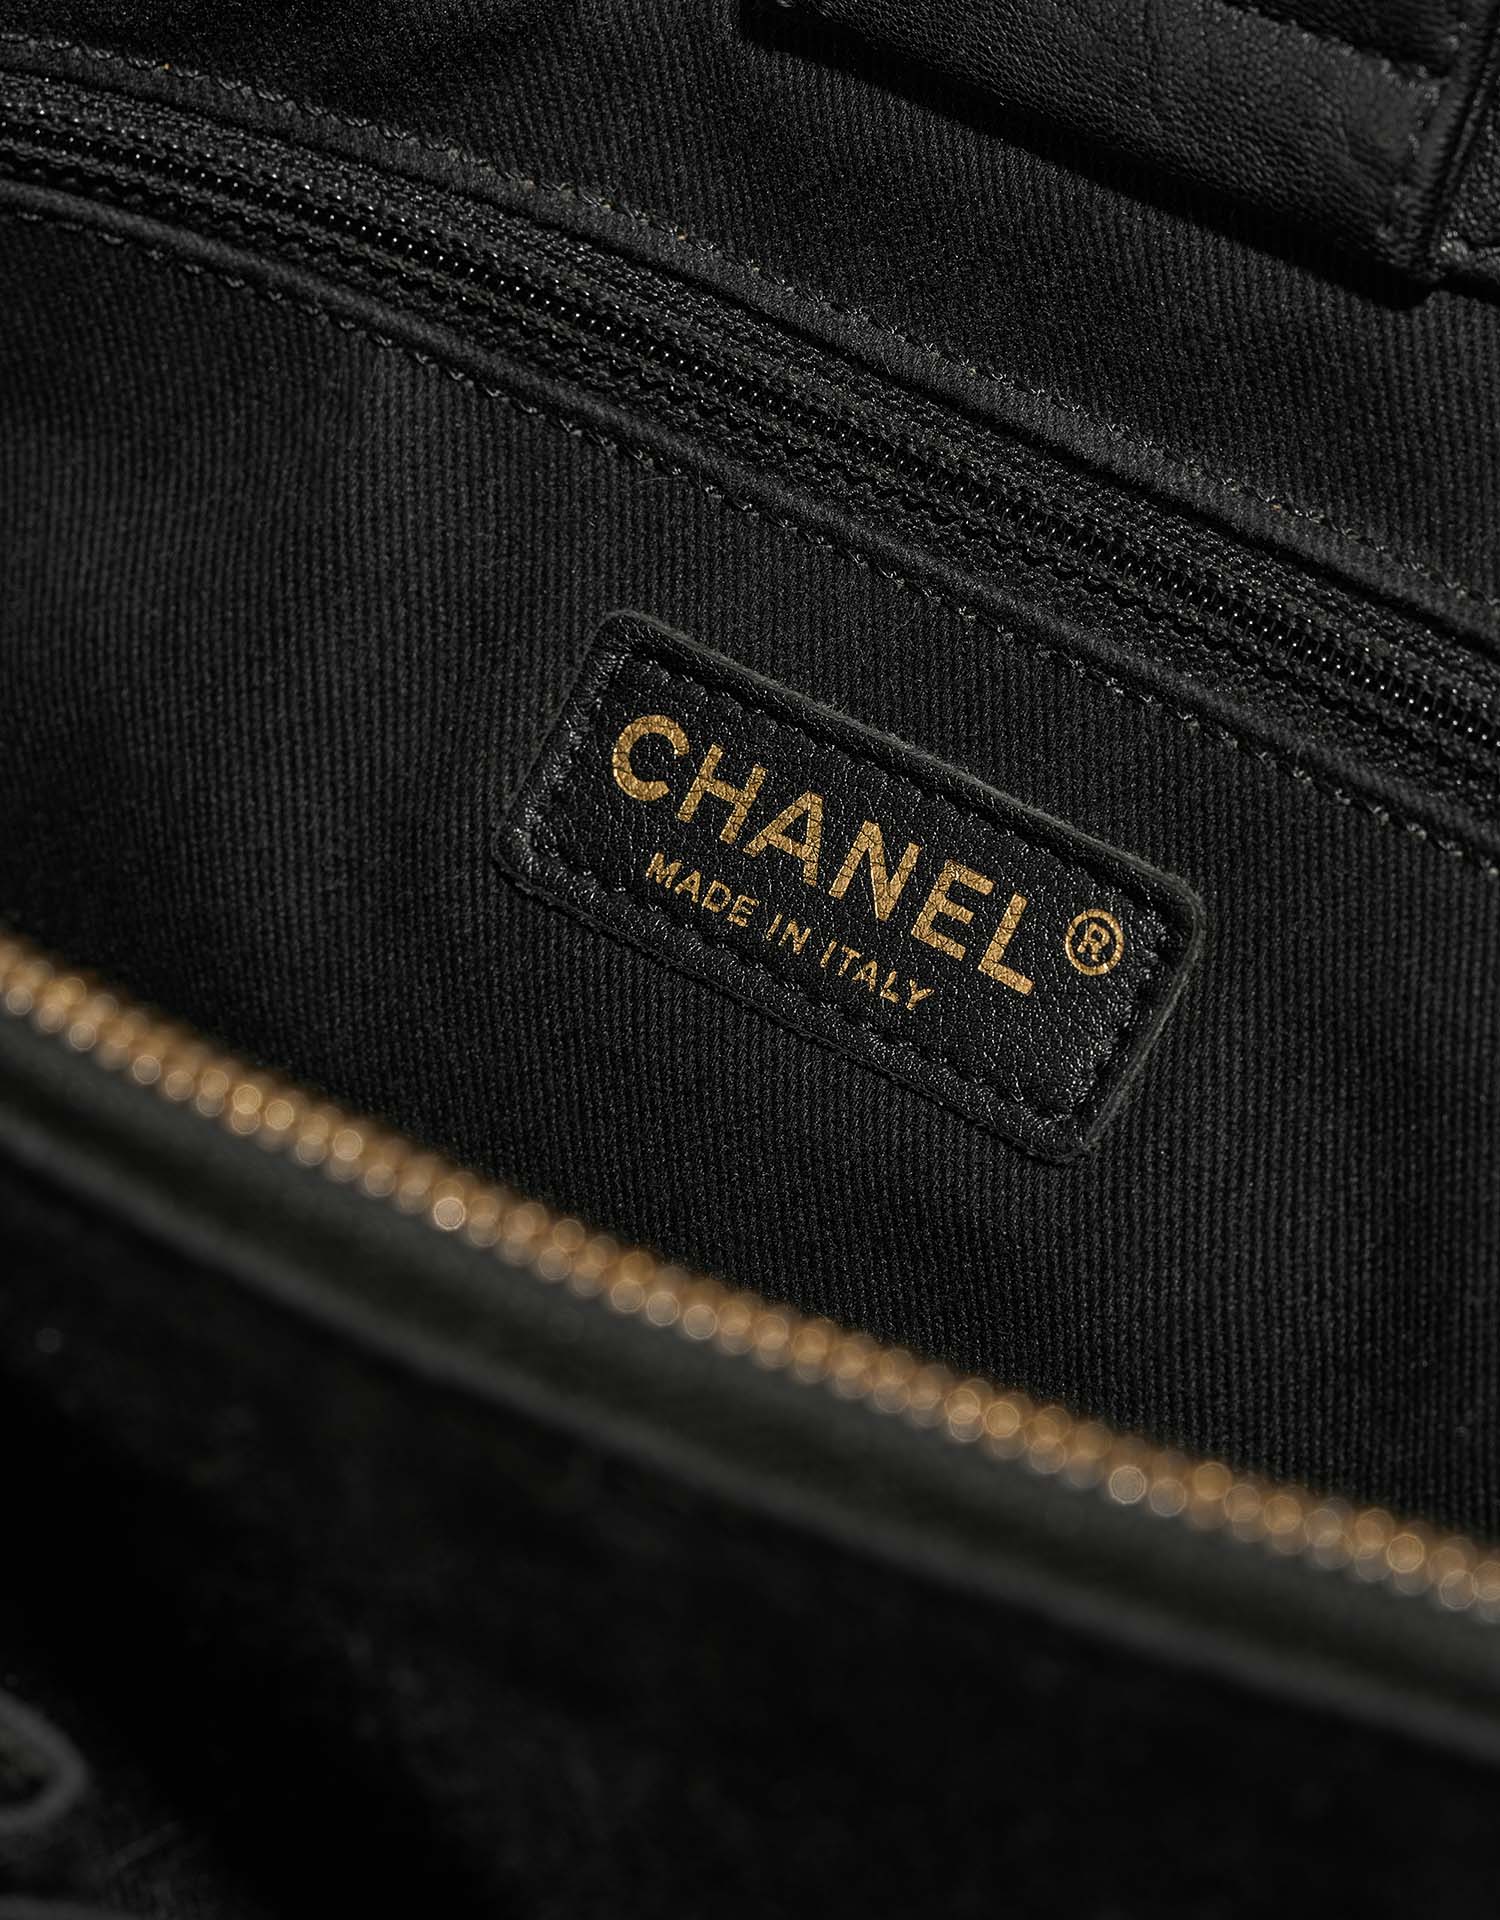 Chanel GST Large Black Logo | Verkaufen Sie Ihre Designer-Tasche auf Saclab.com